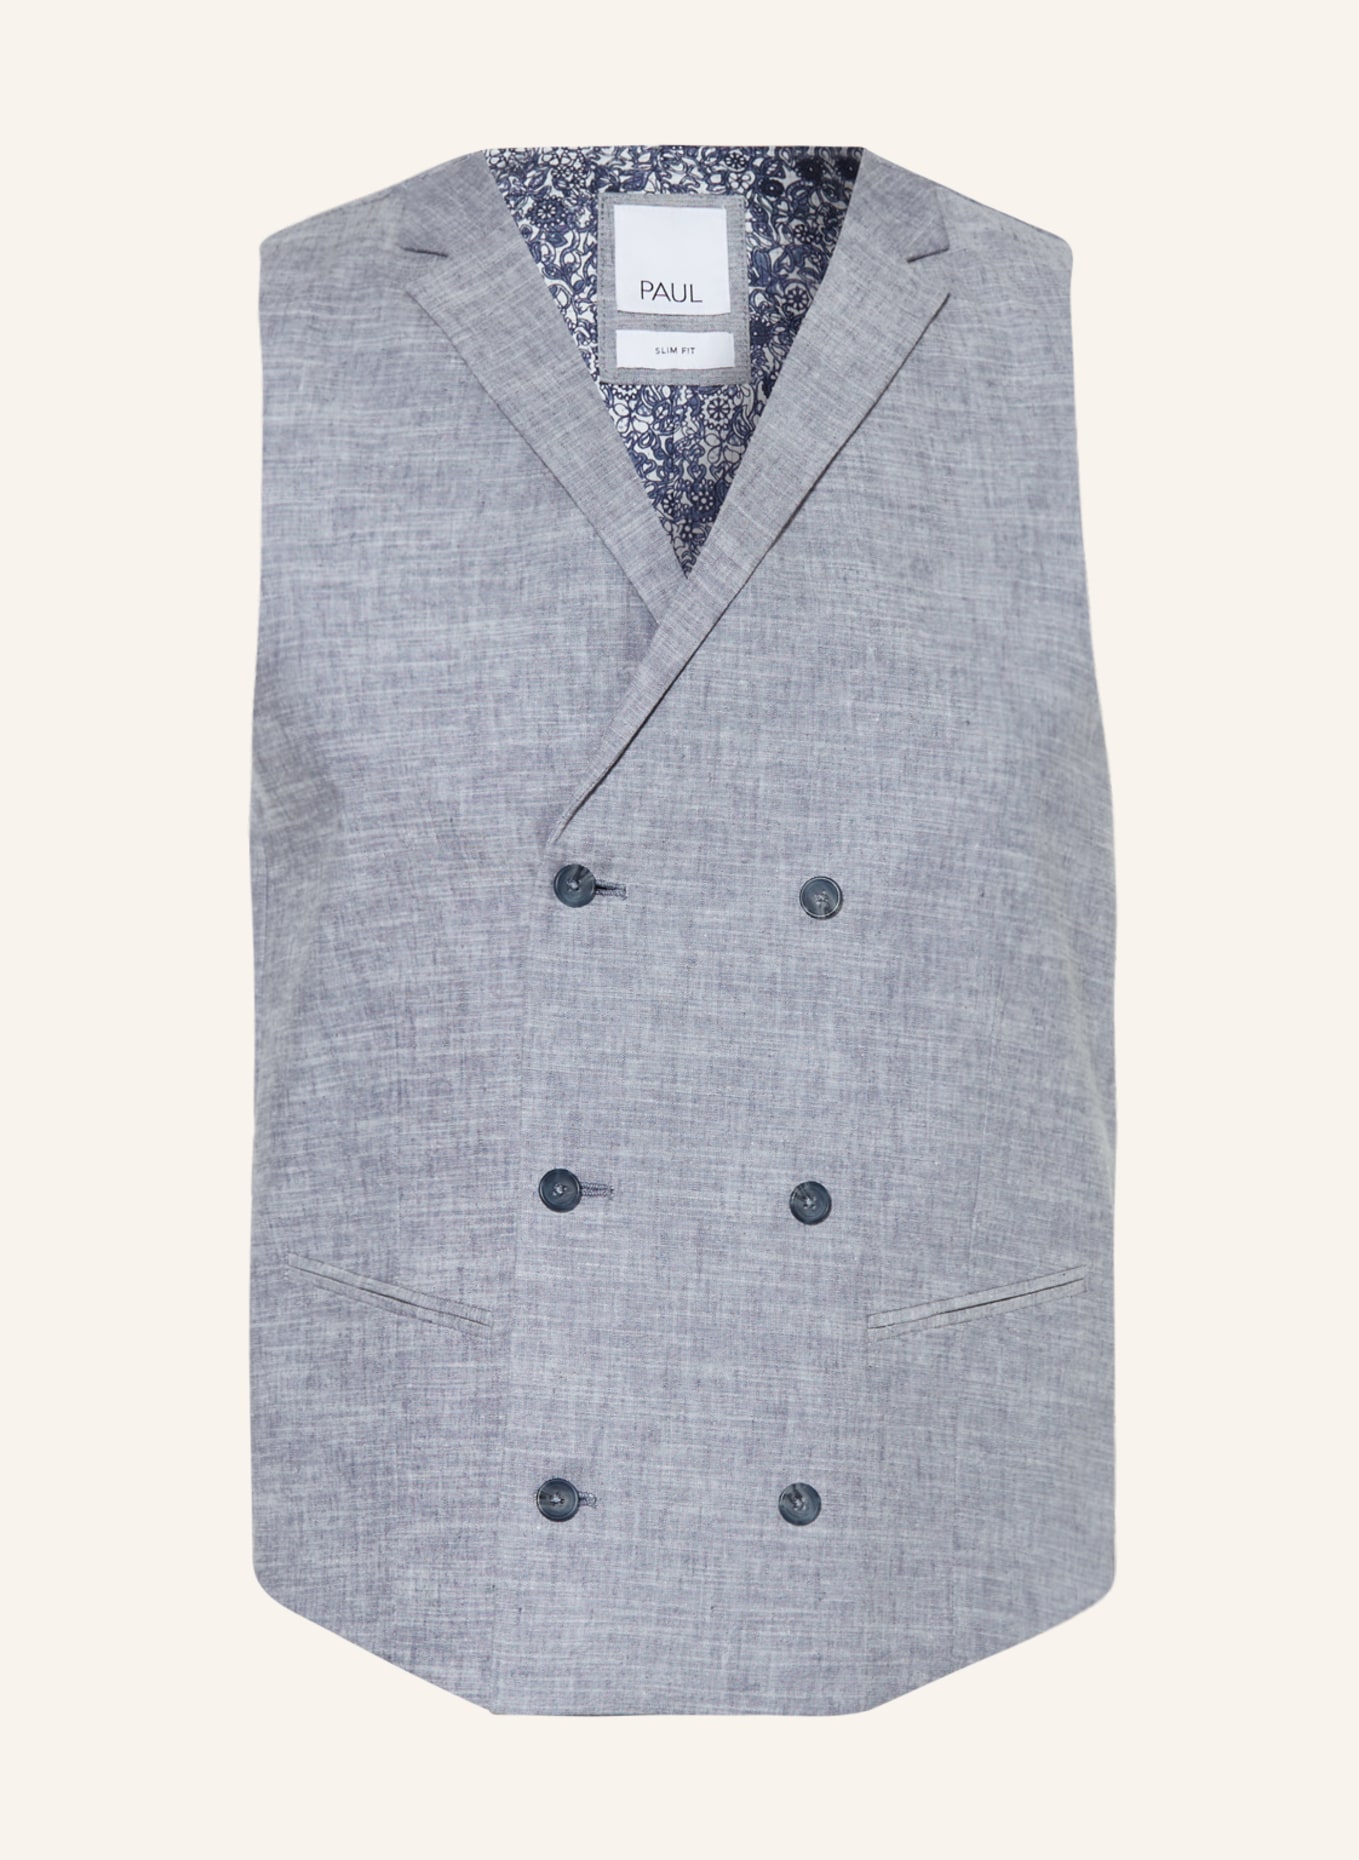 PAUL Suit vest with linen, Color: 001 Light Blue (Image 1)